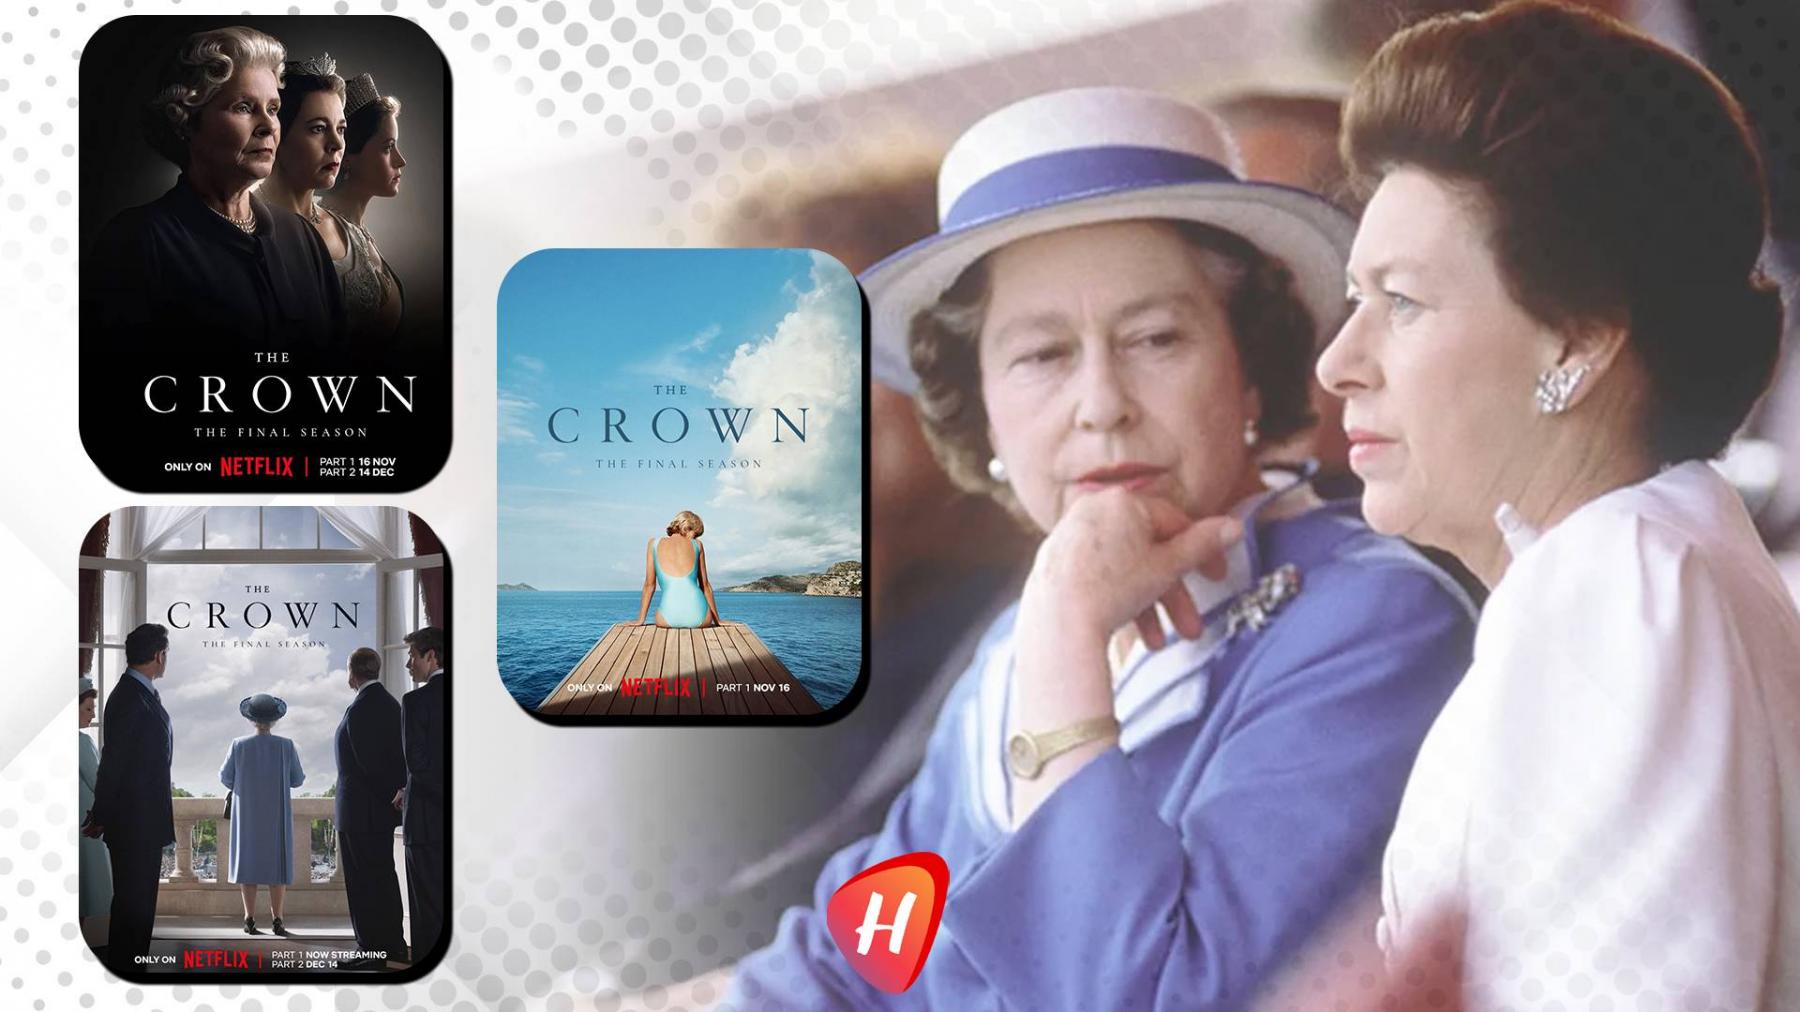 مسلسل The Crown يكشف مأساة الأميرة مارغريت التي انتهت بالوفاة